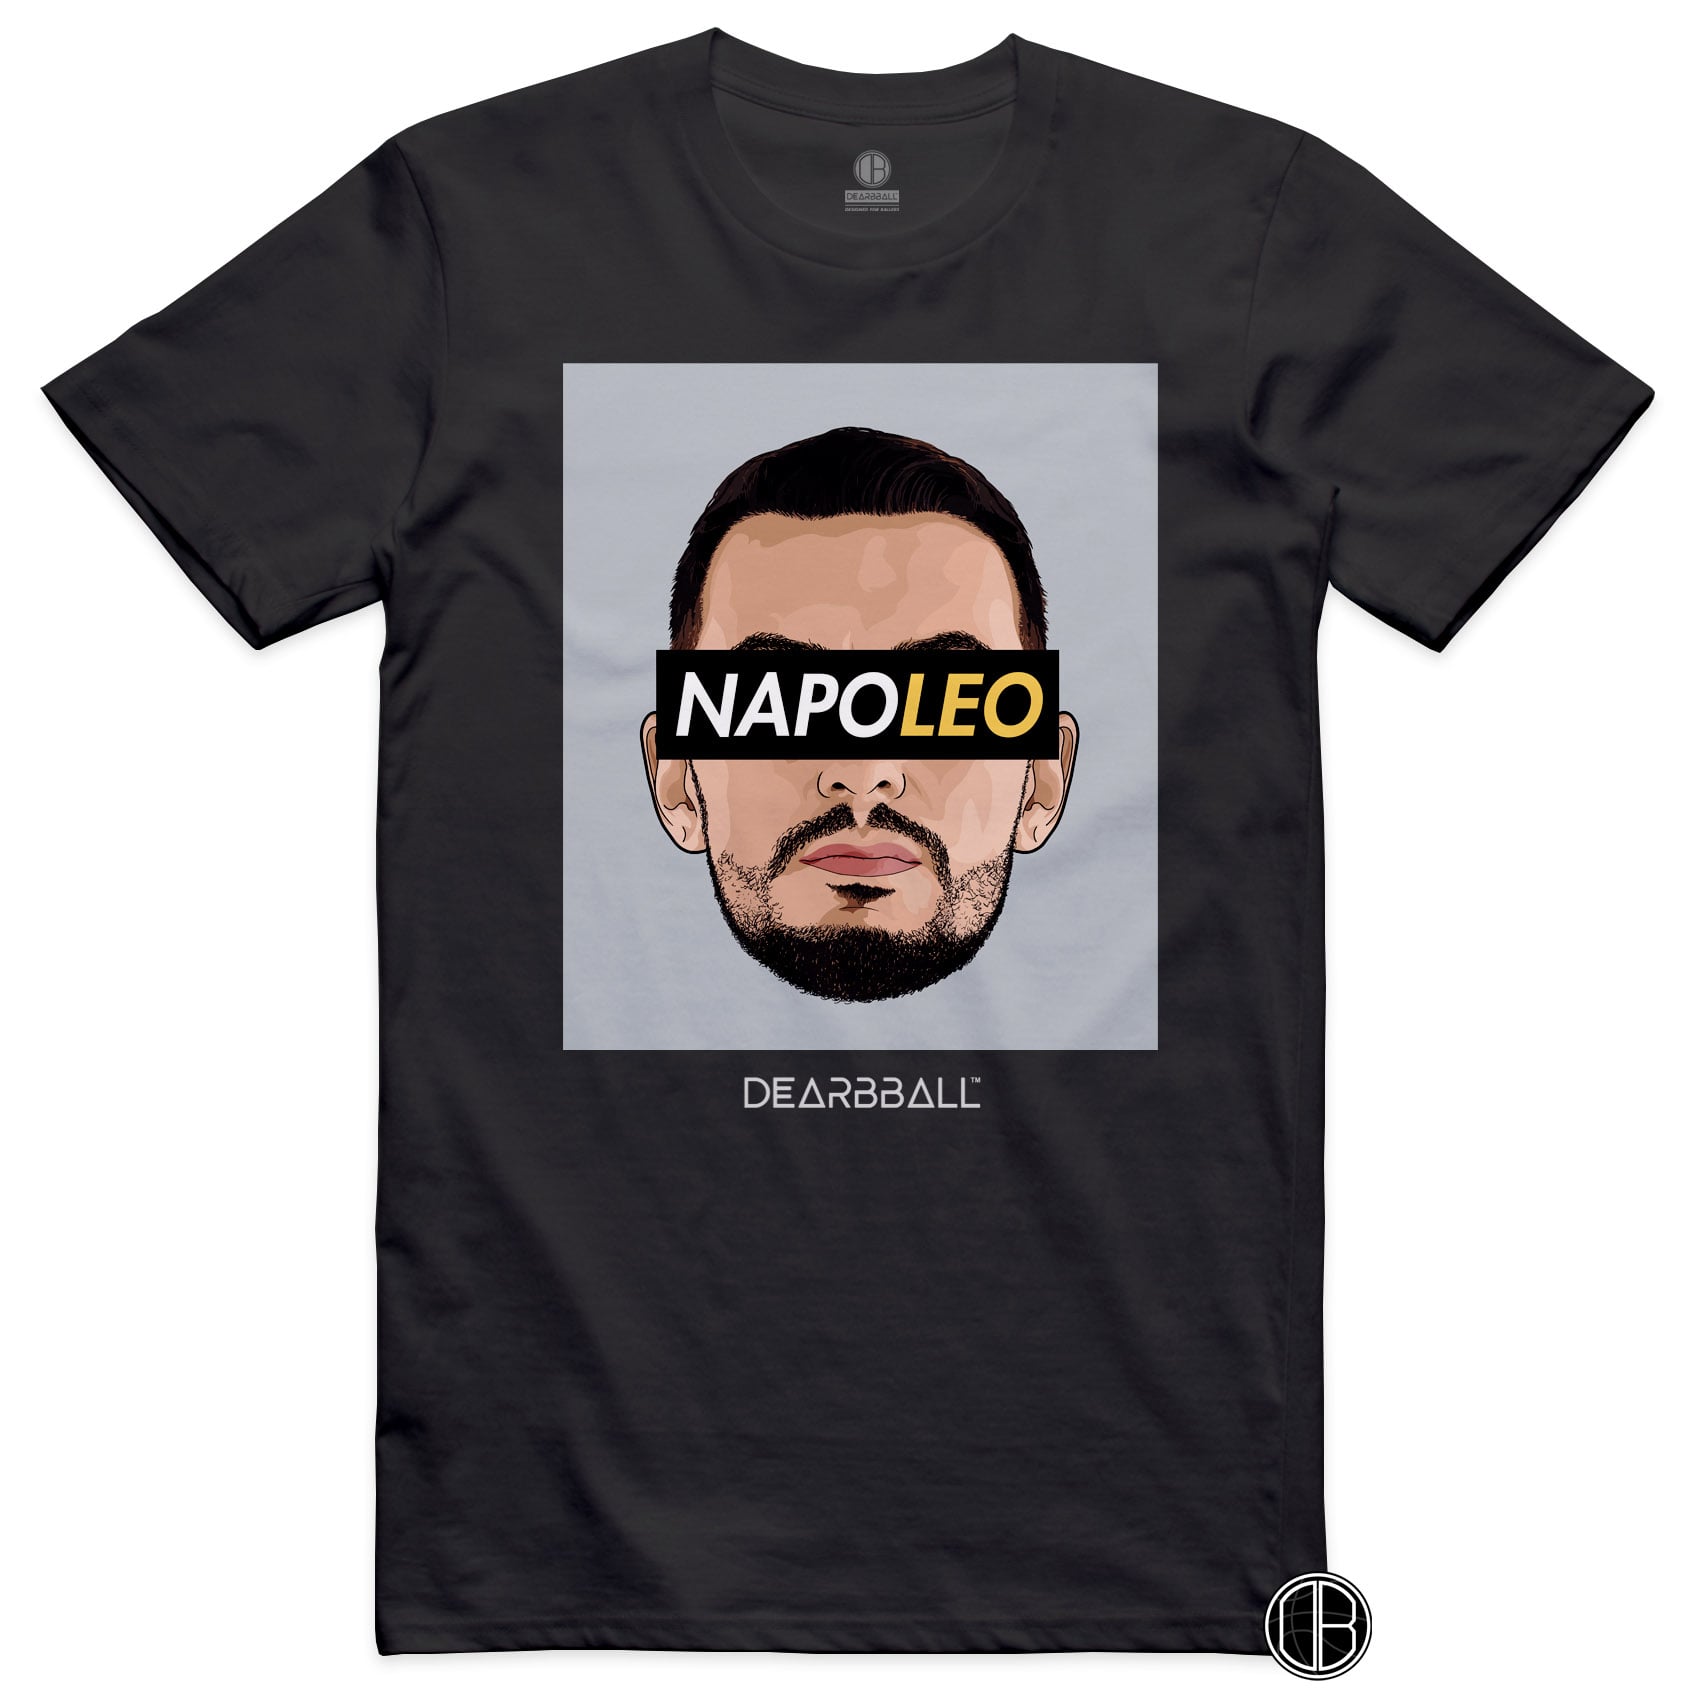 DearBBall T-Shirt - NapoLeo Gray Edition